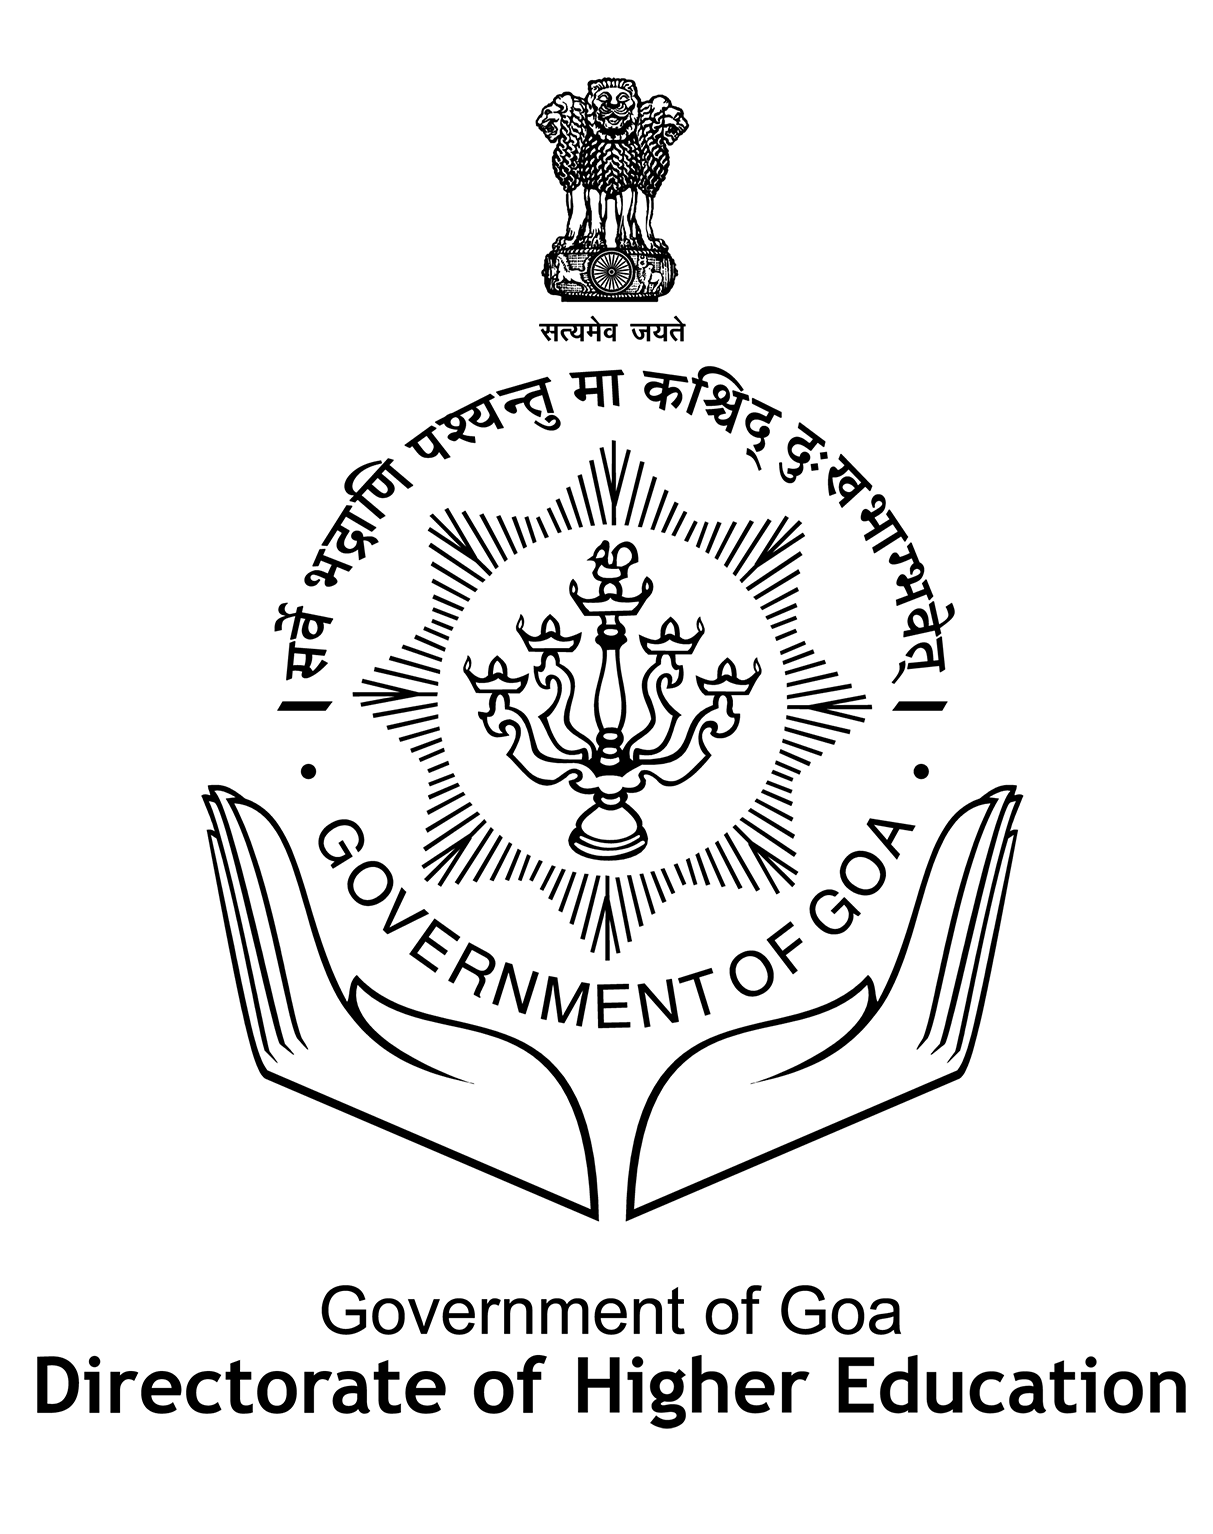 DHE Logo